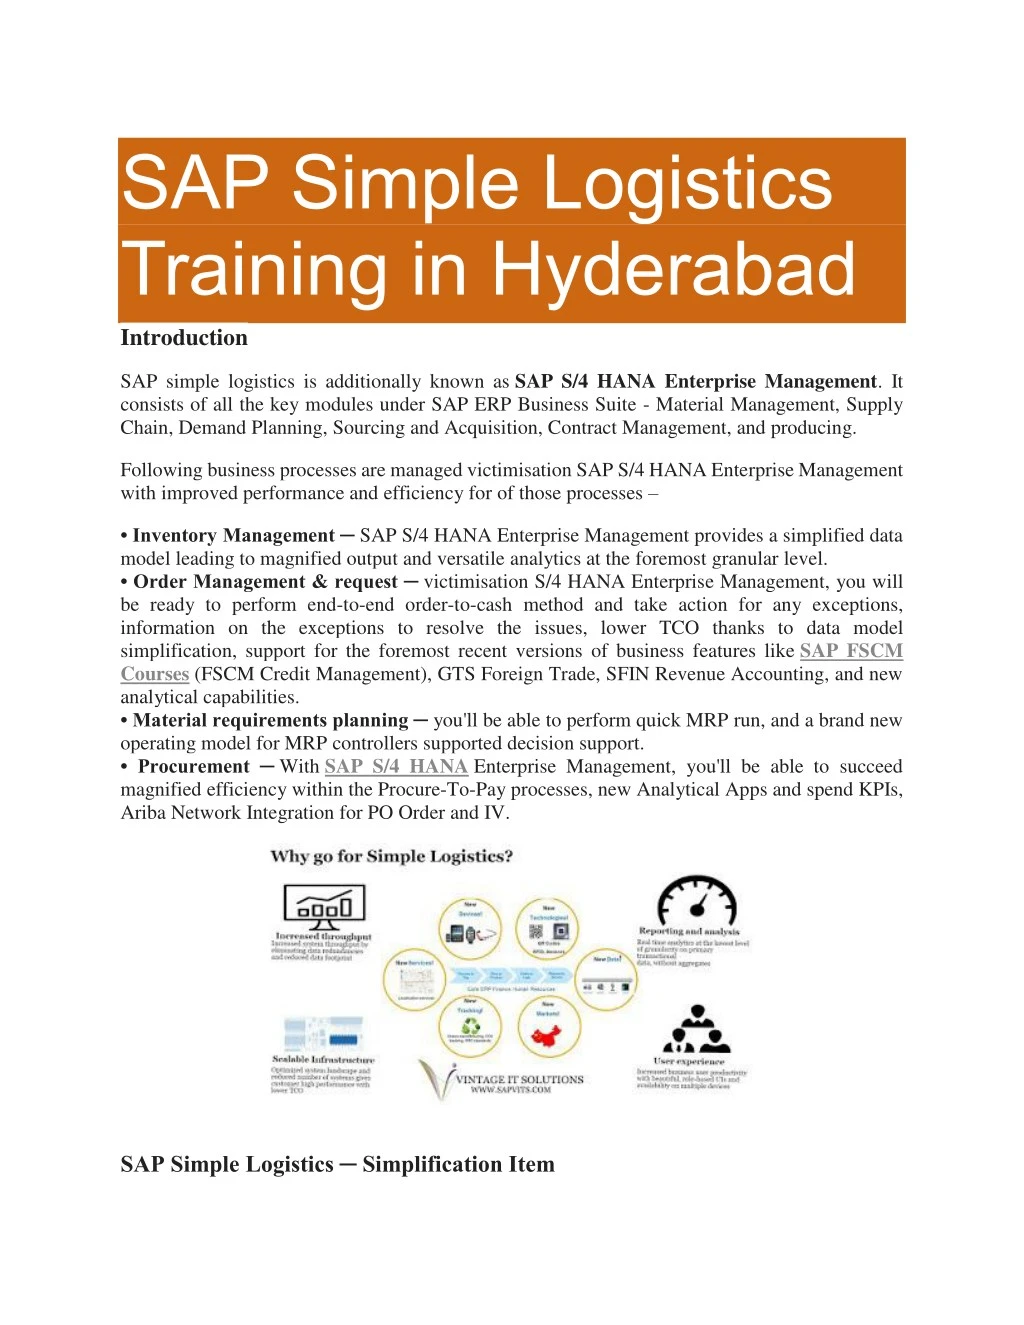 sap simple logistics training in hyderabad